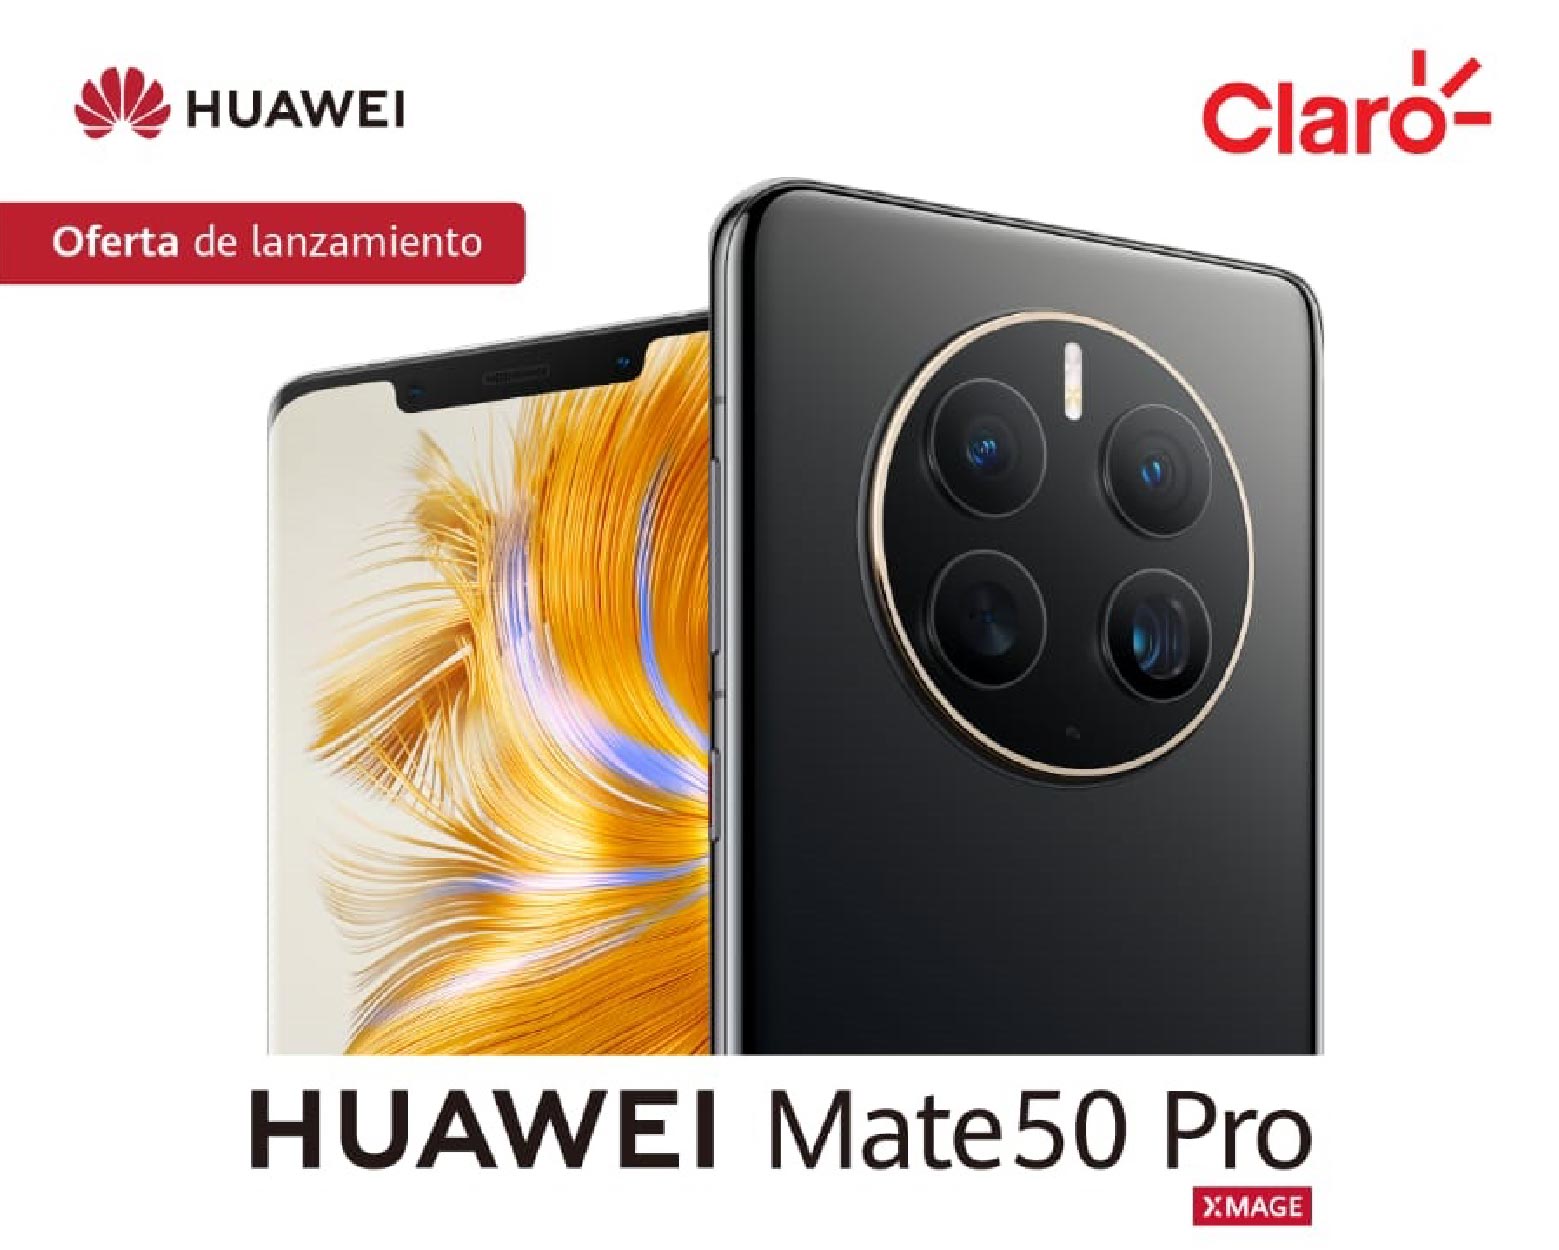 Renueva tu móvil con este HUAWEI Mate 50 Pro que ahora tiene ¡400 euros de